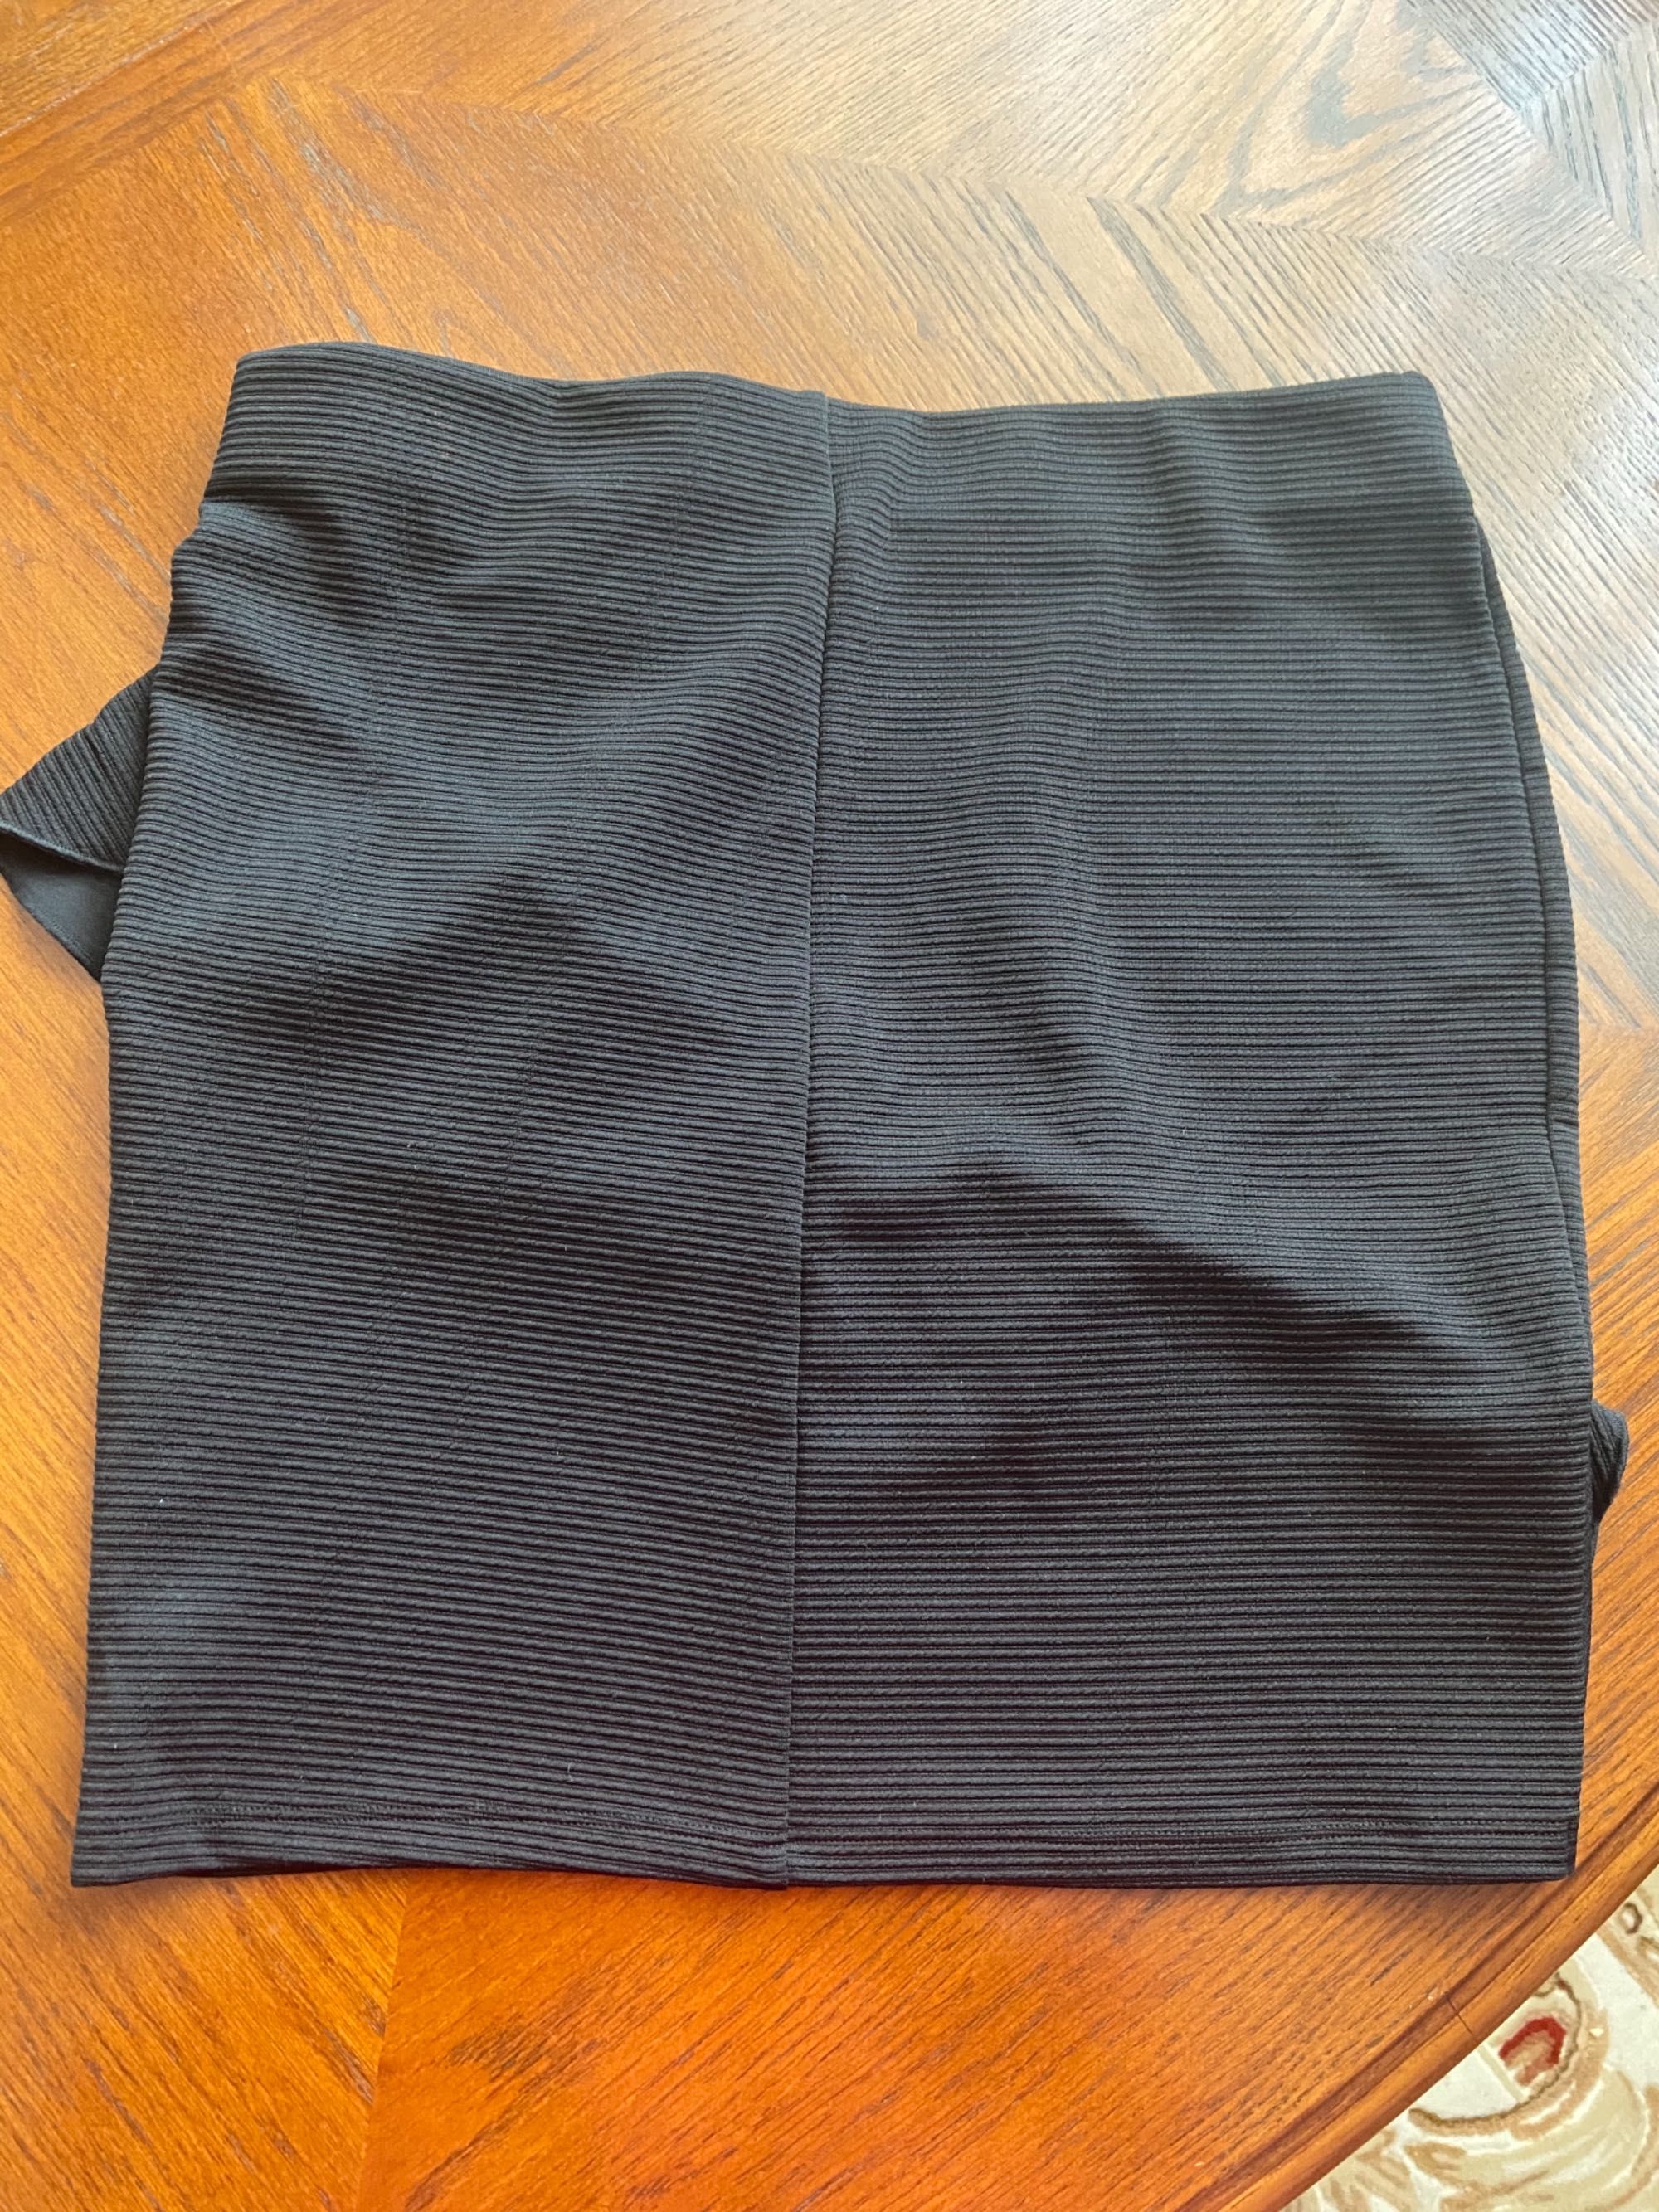 Спідниця (юбка) нова розмір L-Xl